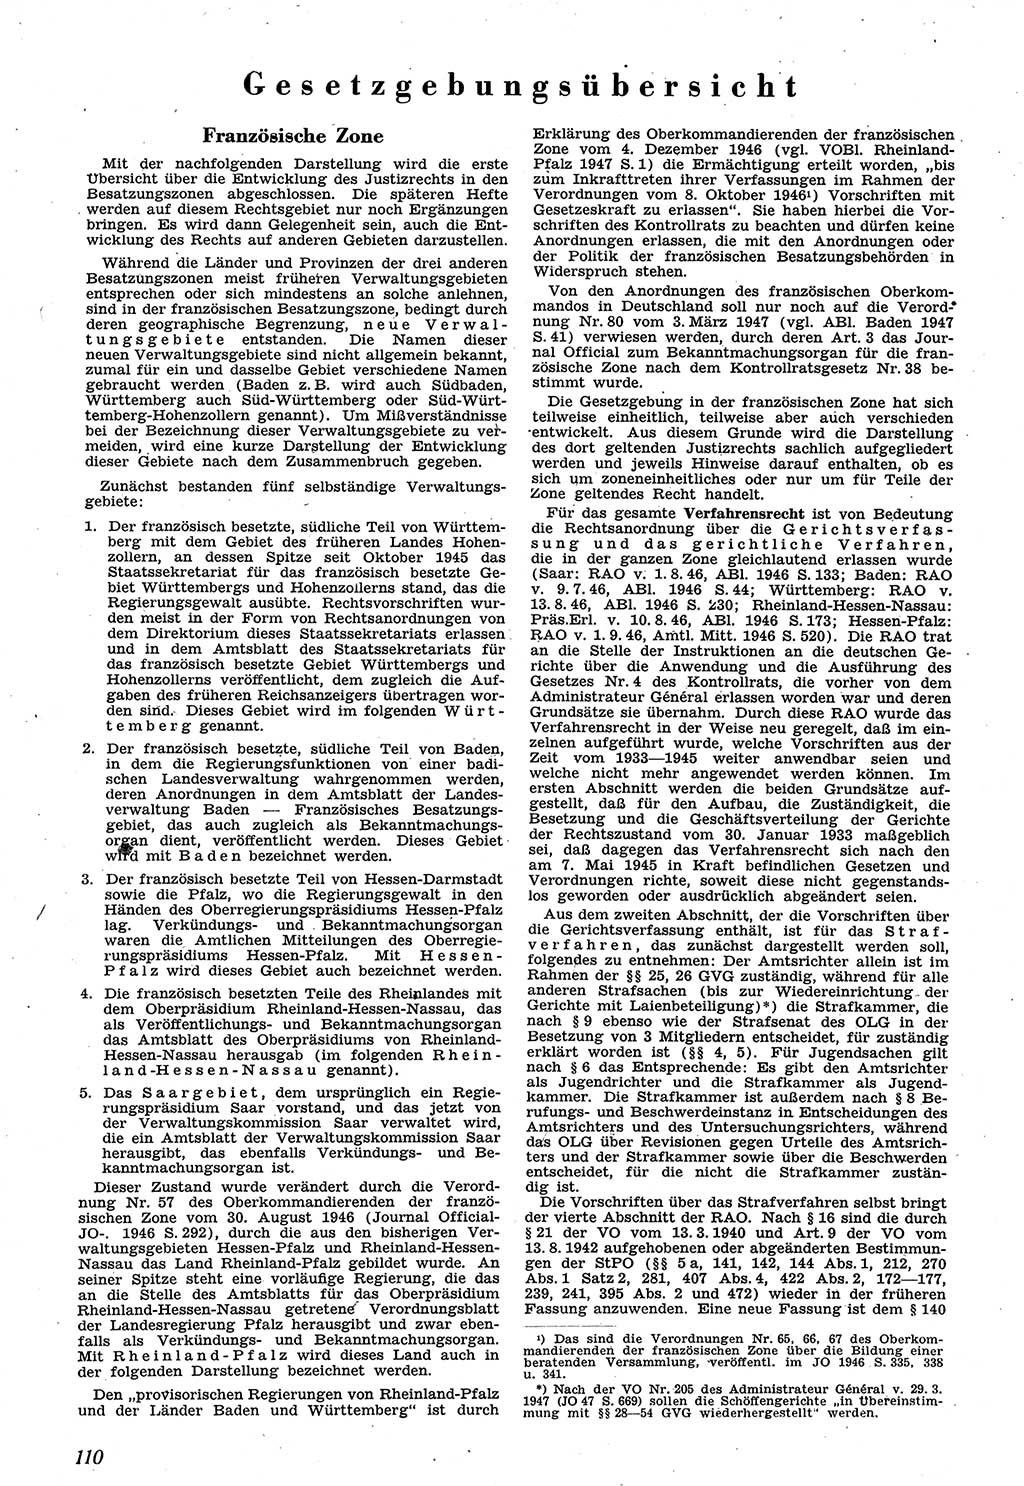 Neue Justiz (NJ), Zeitschrift für Recht und Rechtswissenschaft [Sowjetische Besatzungszone (SBZ) Deutschland], 1. Jahrgang 1947, Seite 110 (NJ SBZ Dtl. 1947, S. 110)